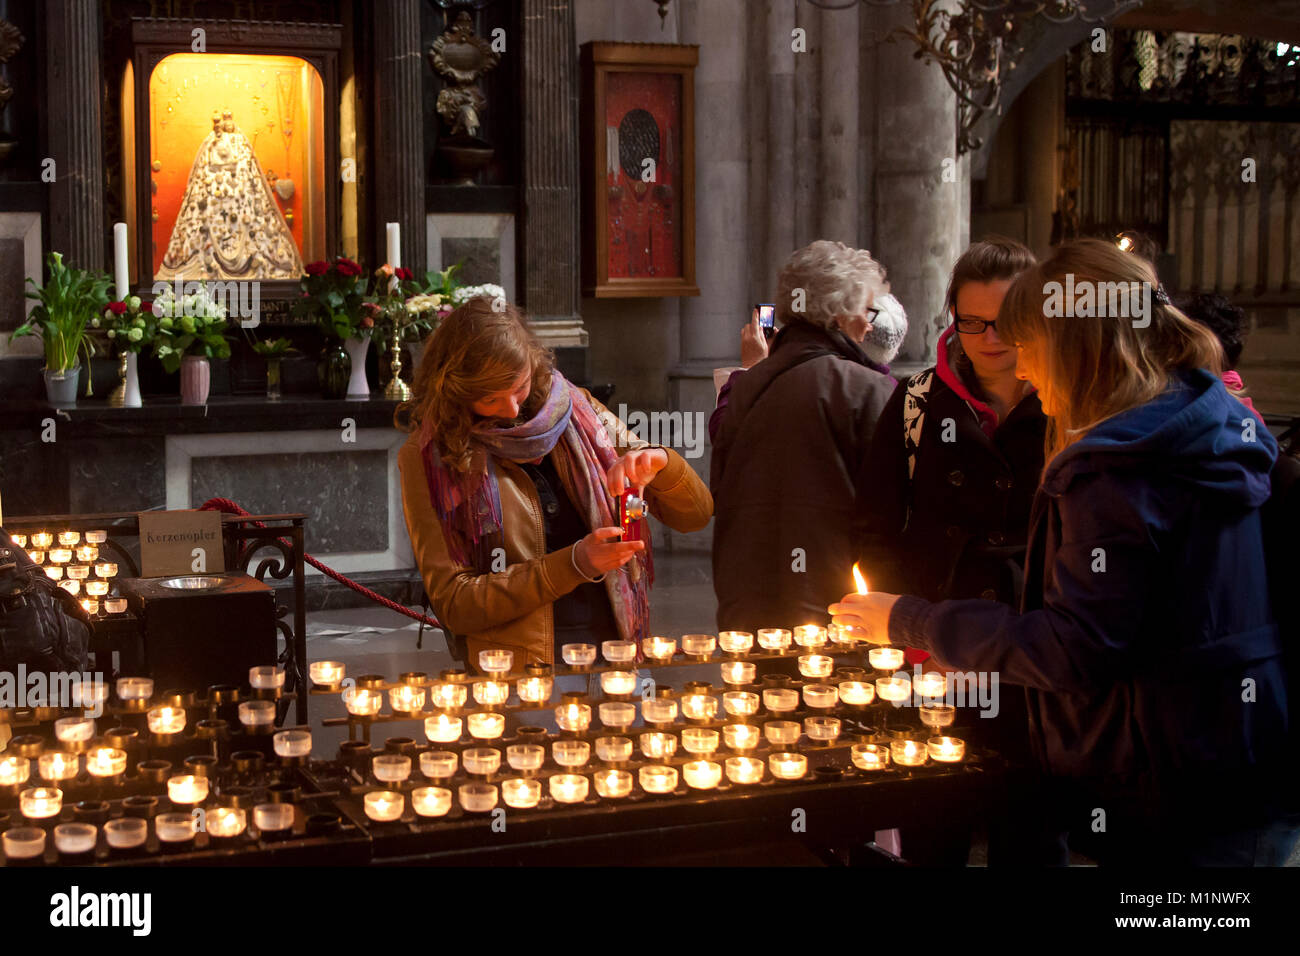 Alemania, Colonia, vista a la joyería Virgen María en la catedral, creyente inflamar las velas. Deutschland, Koeln, Blick zur Schmuckmadonna im Dom, Foto de stock